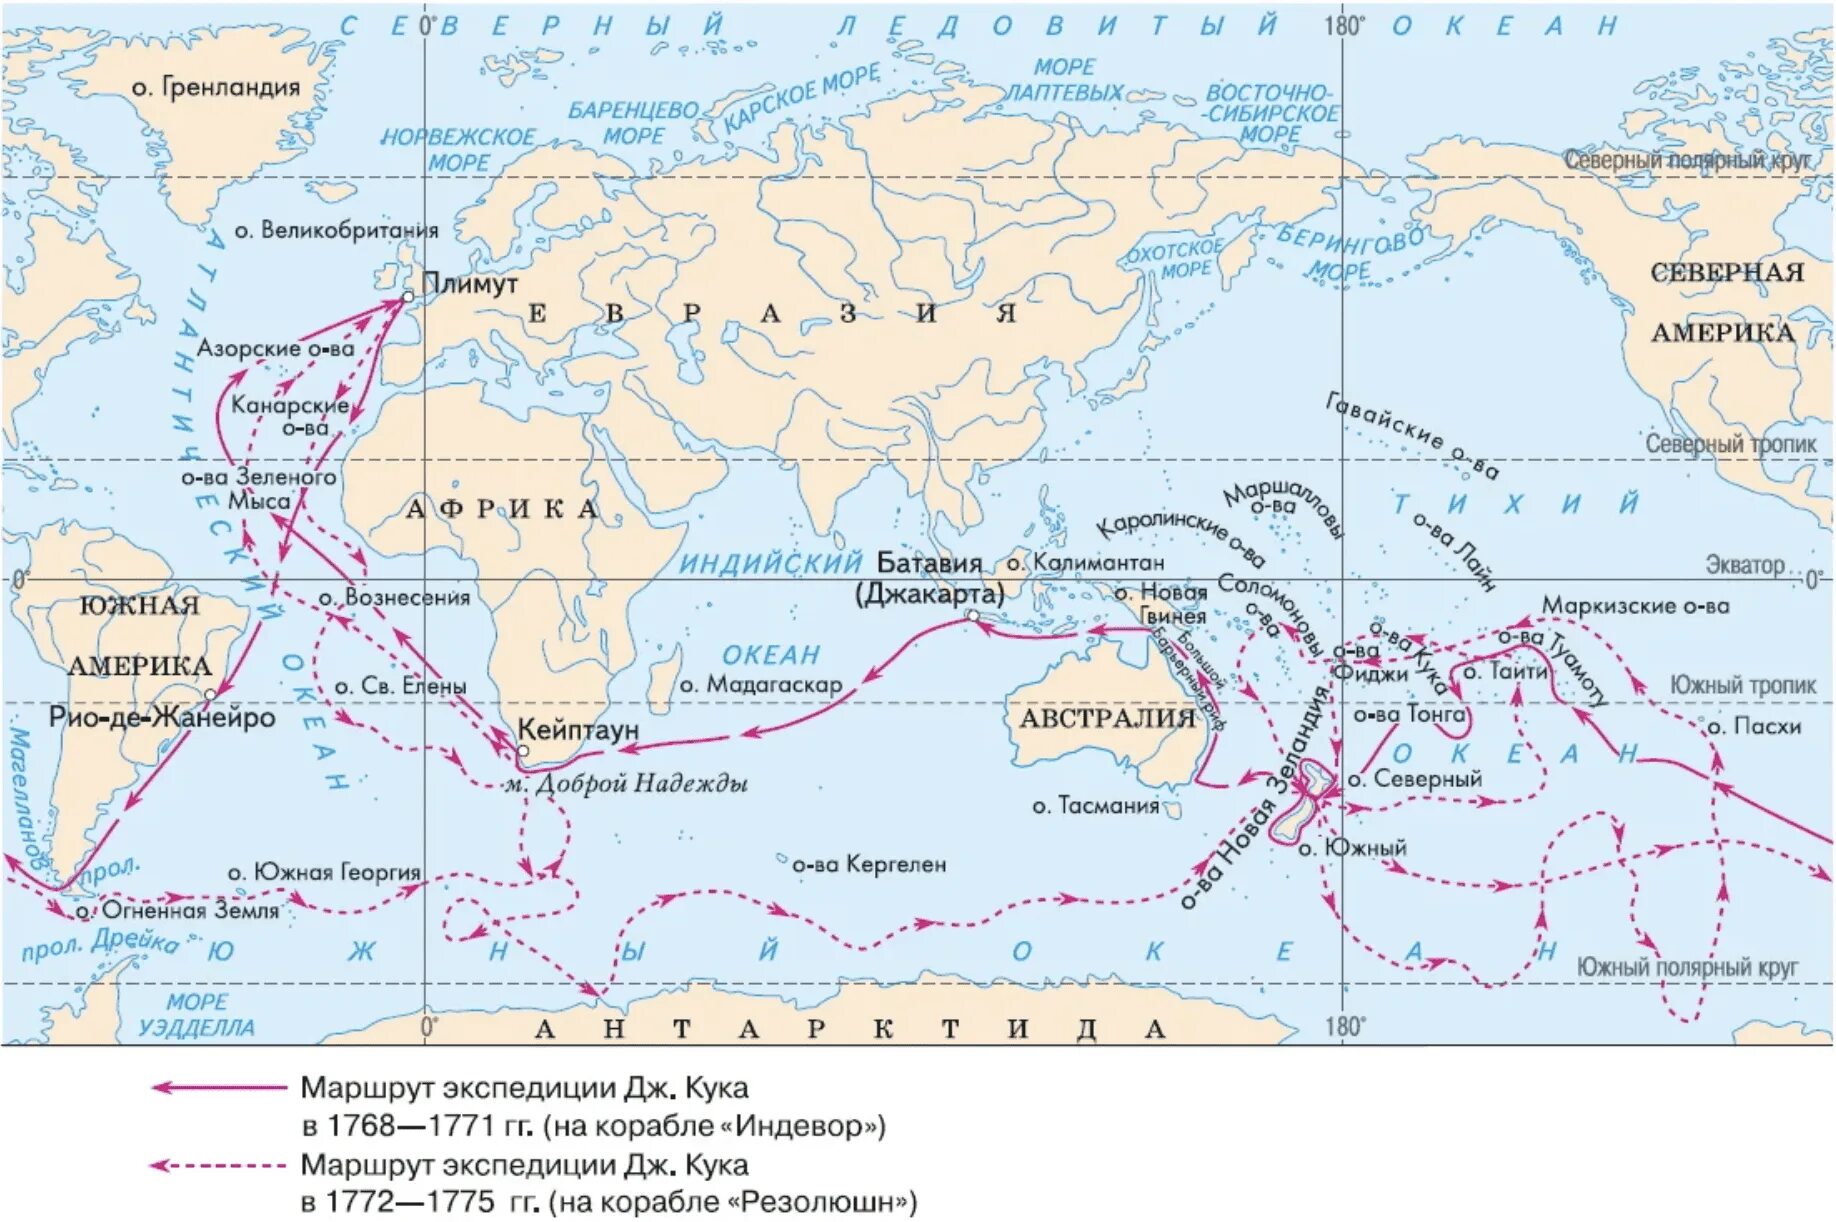 Путешествие через тихий океан. Путешествие Джеймса Кука 1768 на карте. Маршрут экспедиции Джеймса Кука на карте. Маршрут Джеймса Кука на карте 1768-1771.